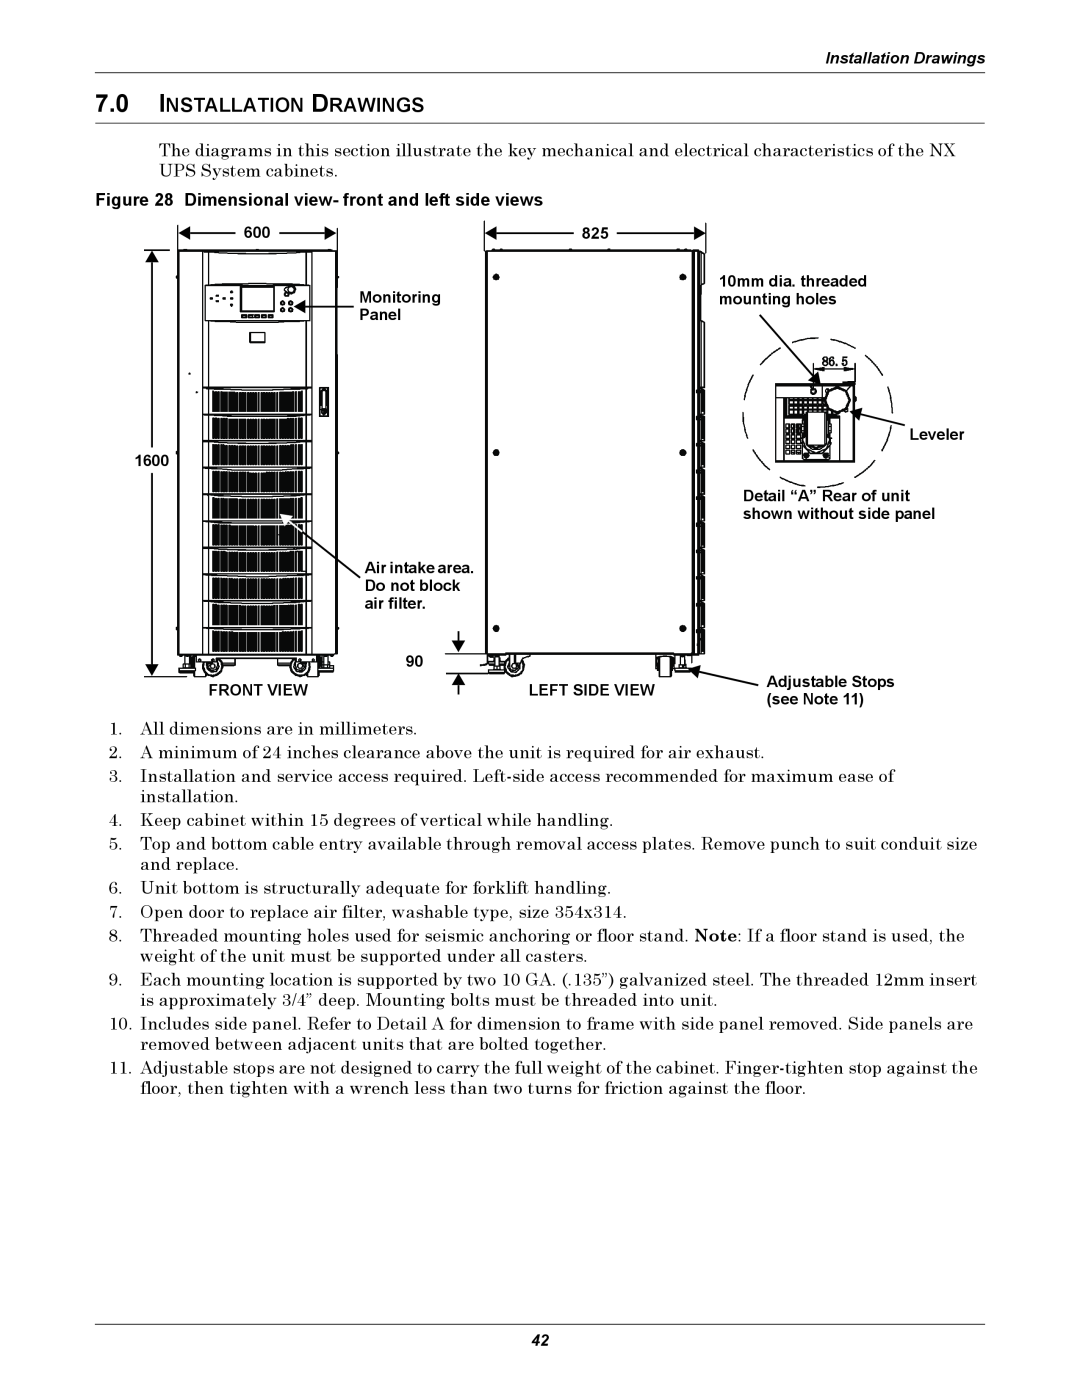 Emerson 10-30kVA, 208V installation manual 7.0INSTALLATION DRAWINGS 